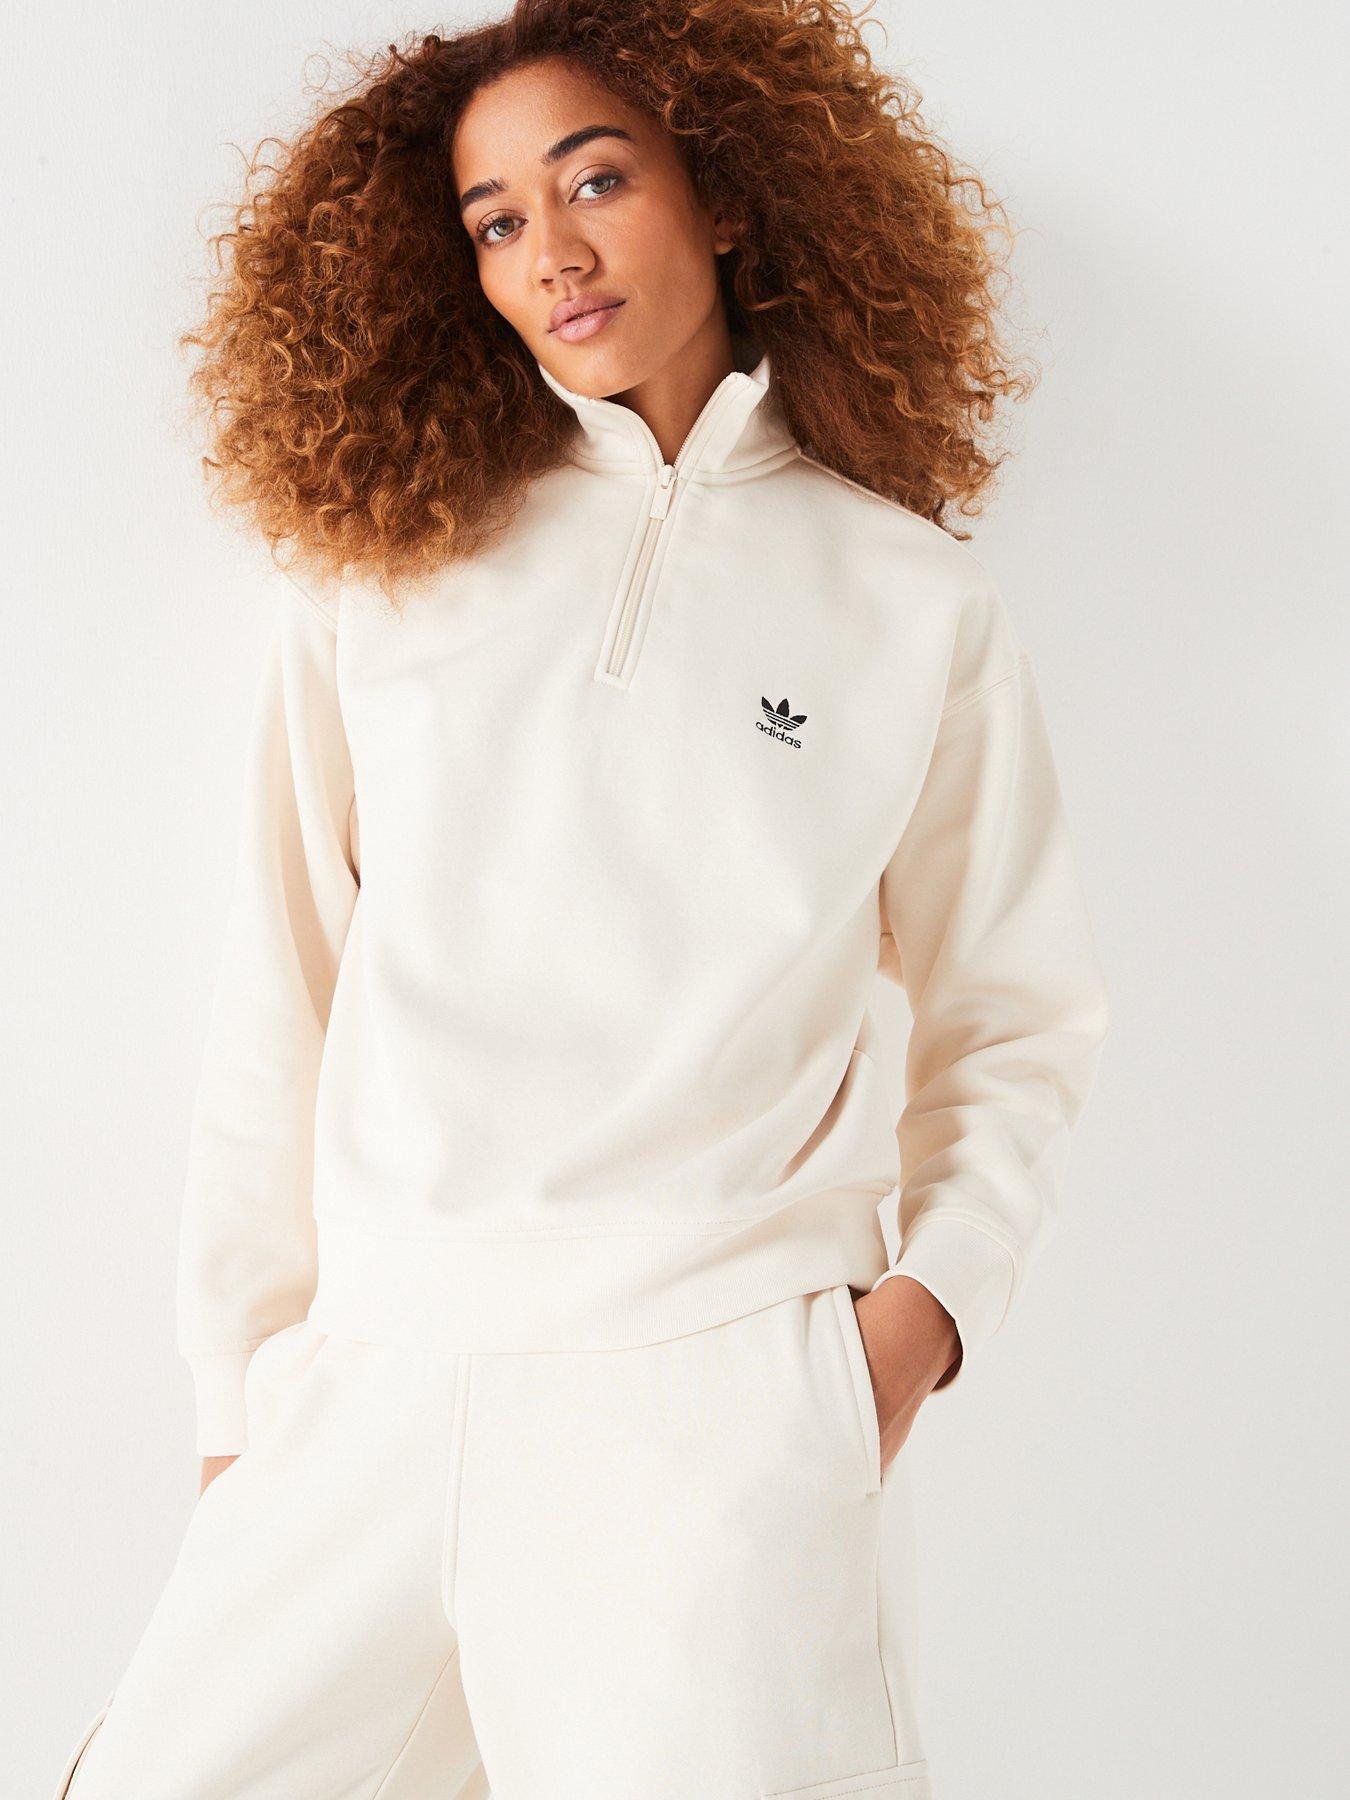 adidas Originals Womens Half Zip Sweatshirt - White, White, Size S, Women